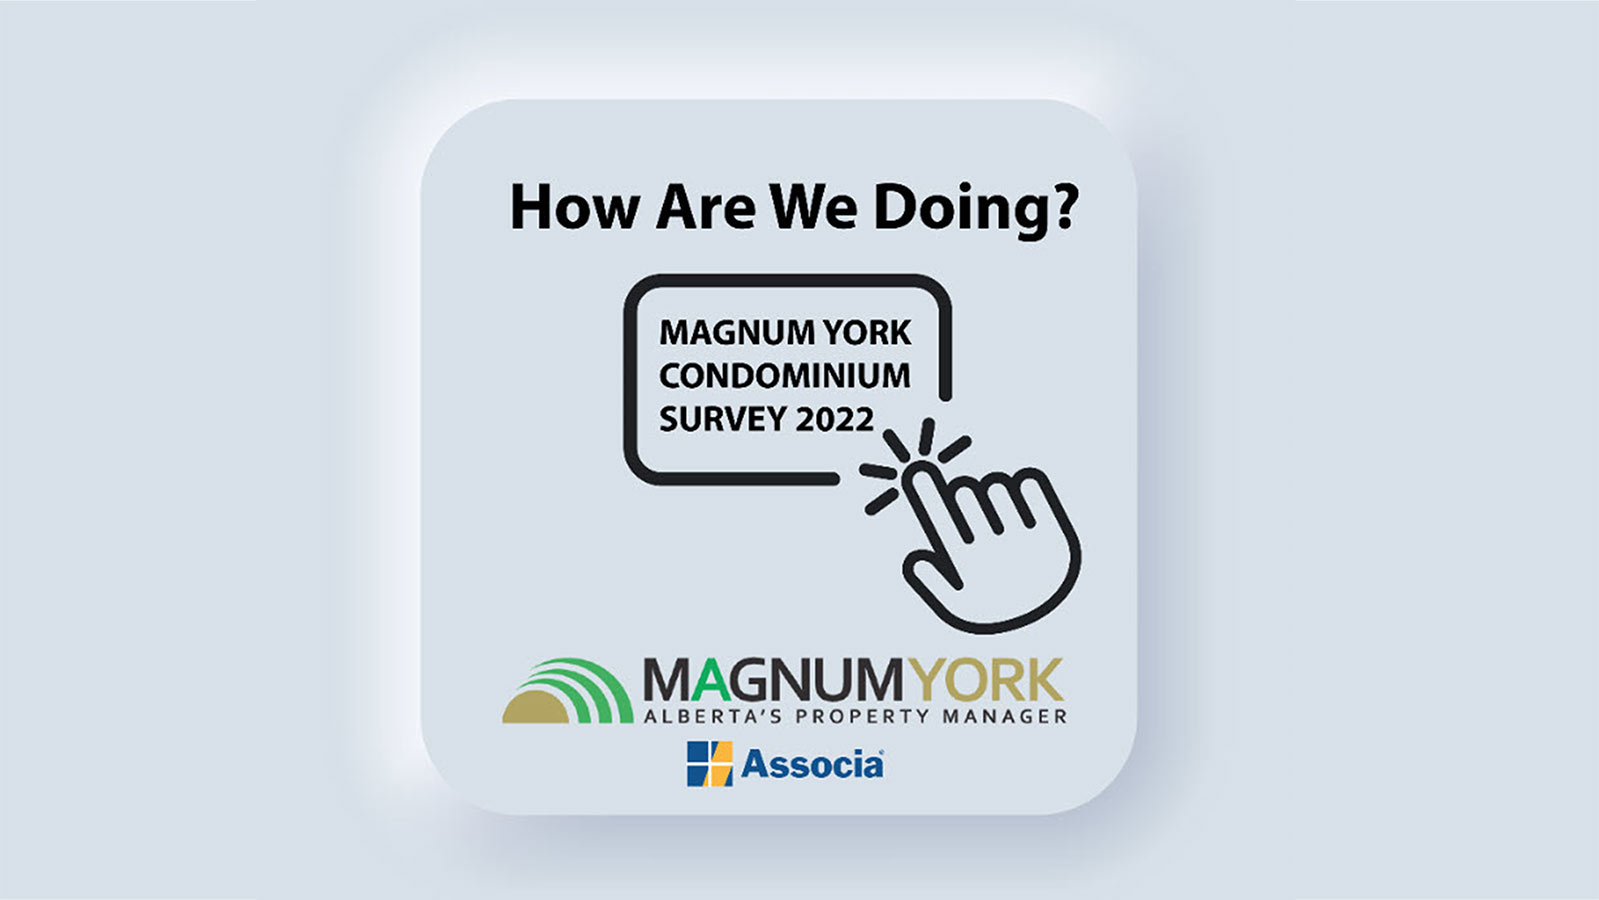 Magnum York Condominium Survey How Are We Doing?